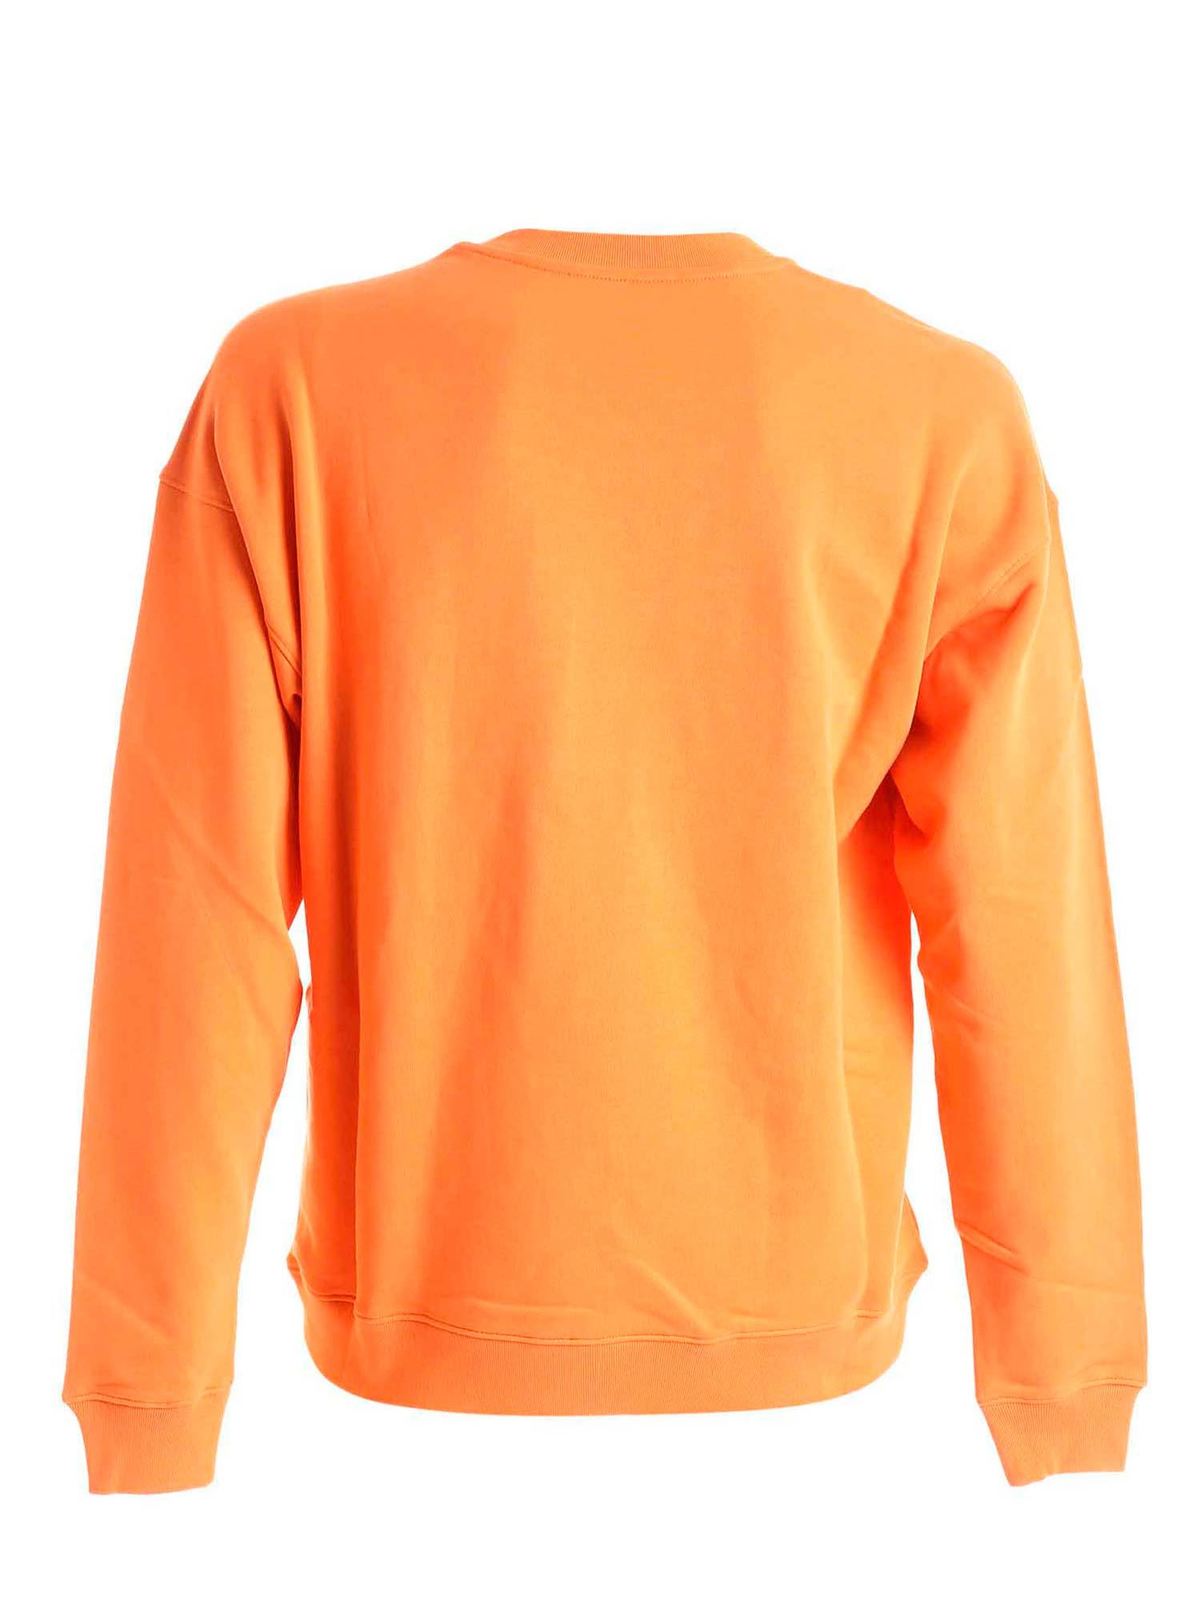 moschino orange sweatshirt